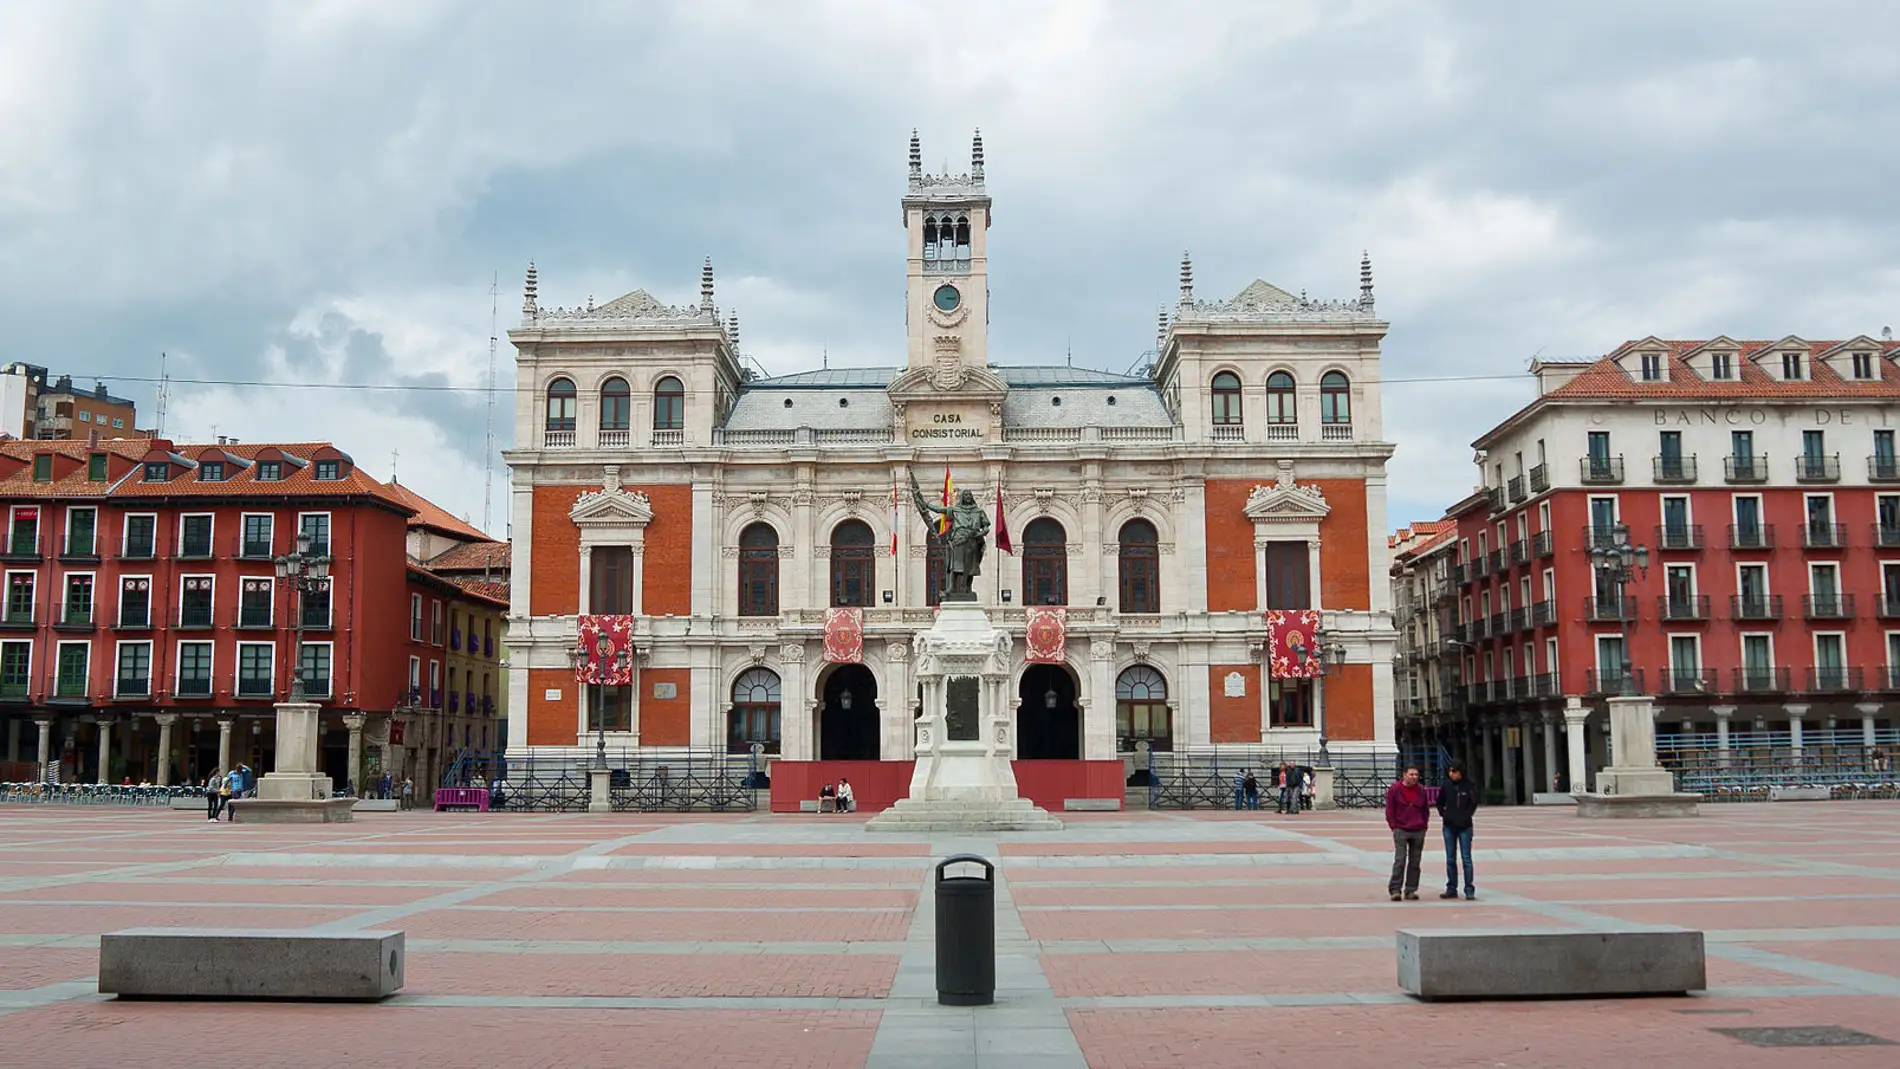 Plaza Mayor de Valladolid: estas son las curiosidades que te sorprenderán